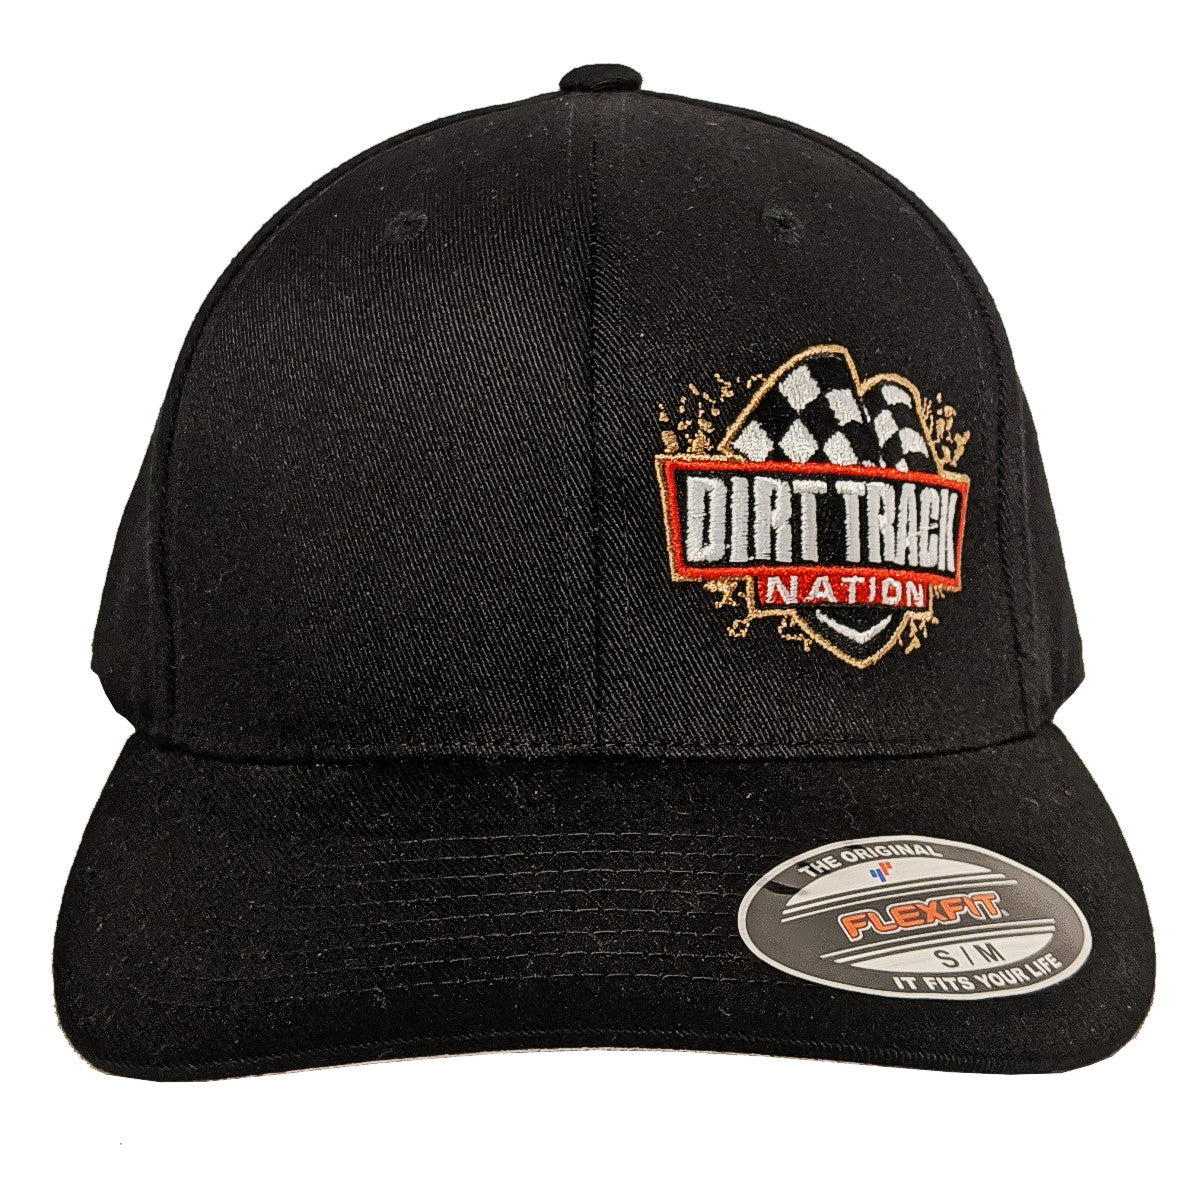 Nation Black Track Dirt Hat Flex-Fit